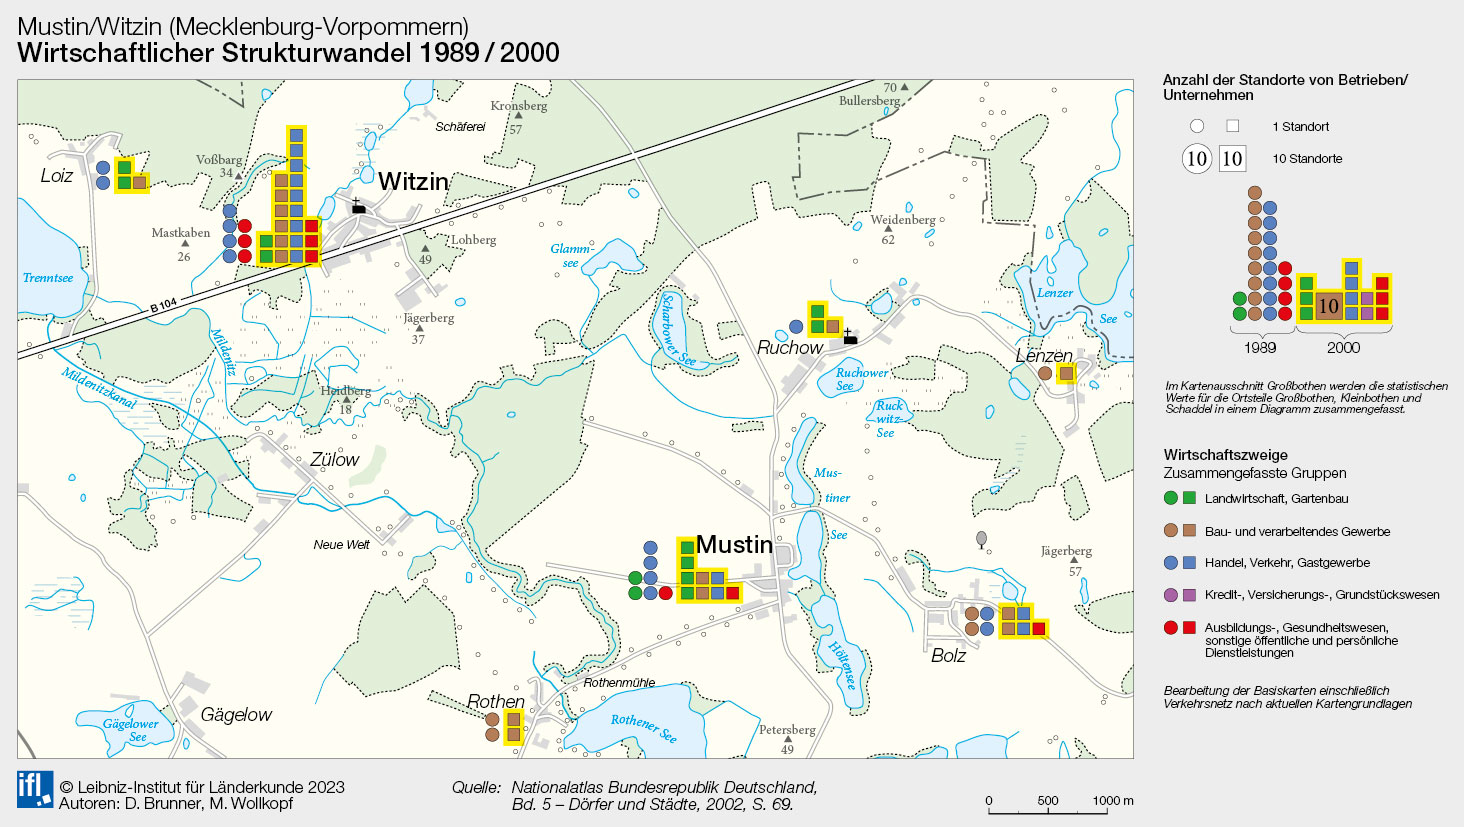 Mustin/Witzin (Mecklenburg-Vorpommern) - Wirtschaftlicher Strukturwandel 1989/2000